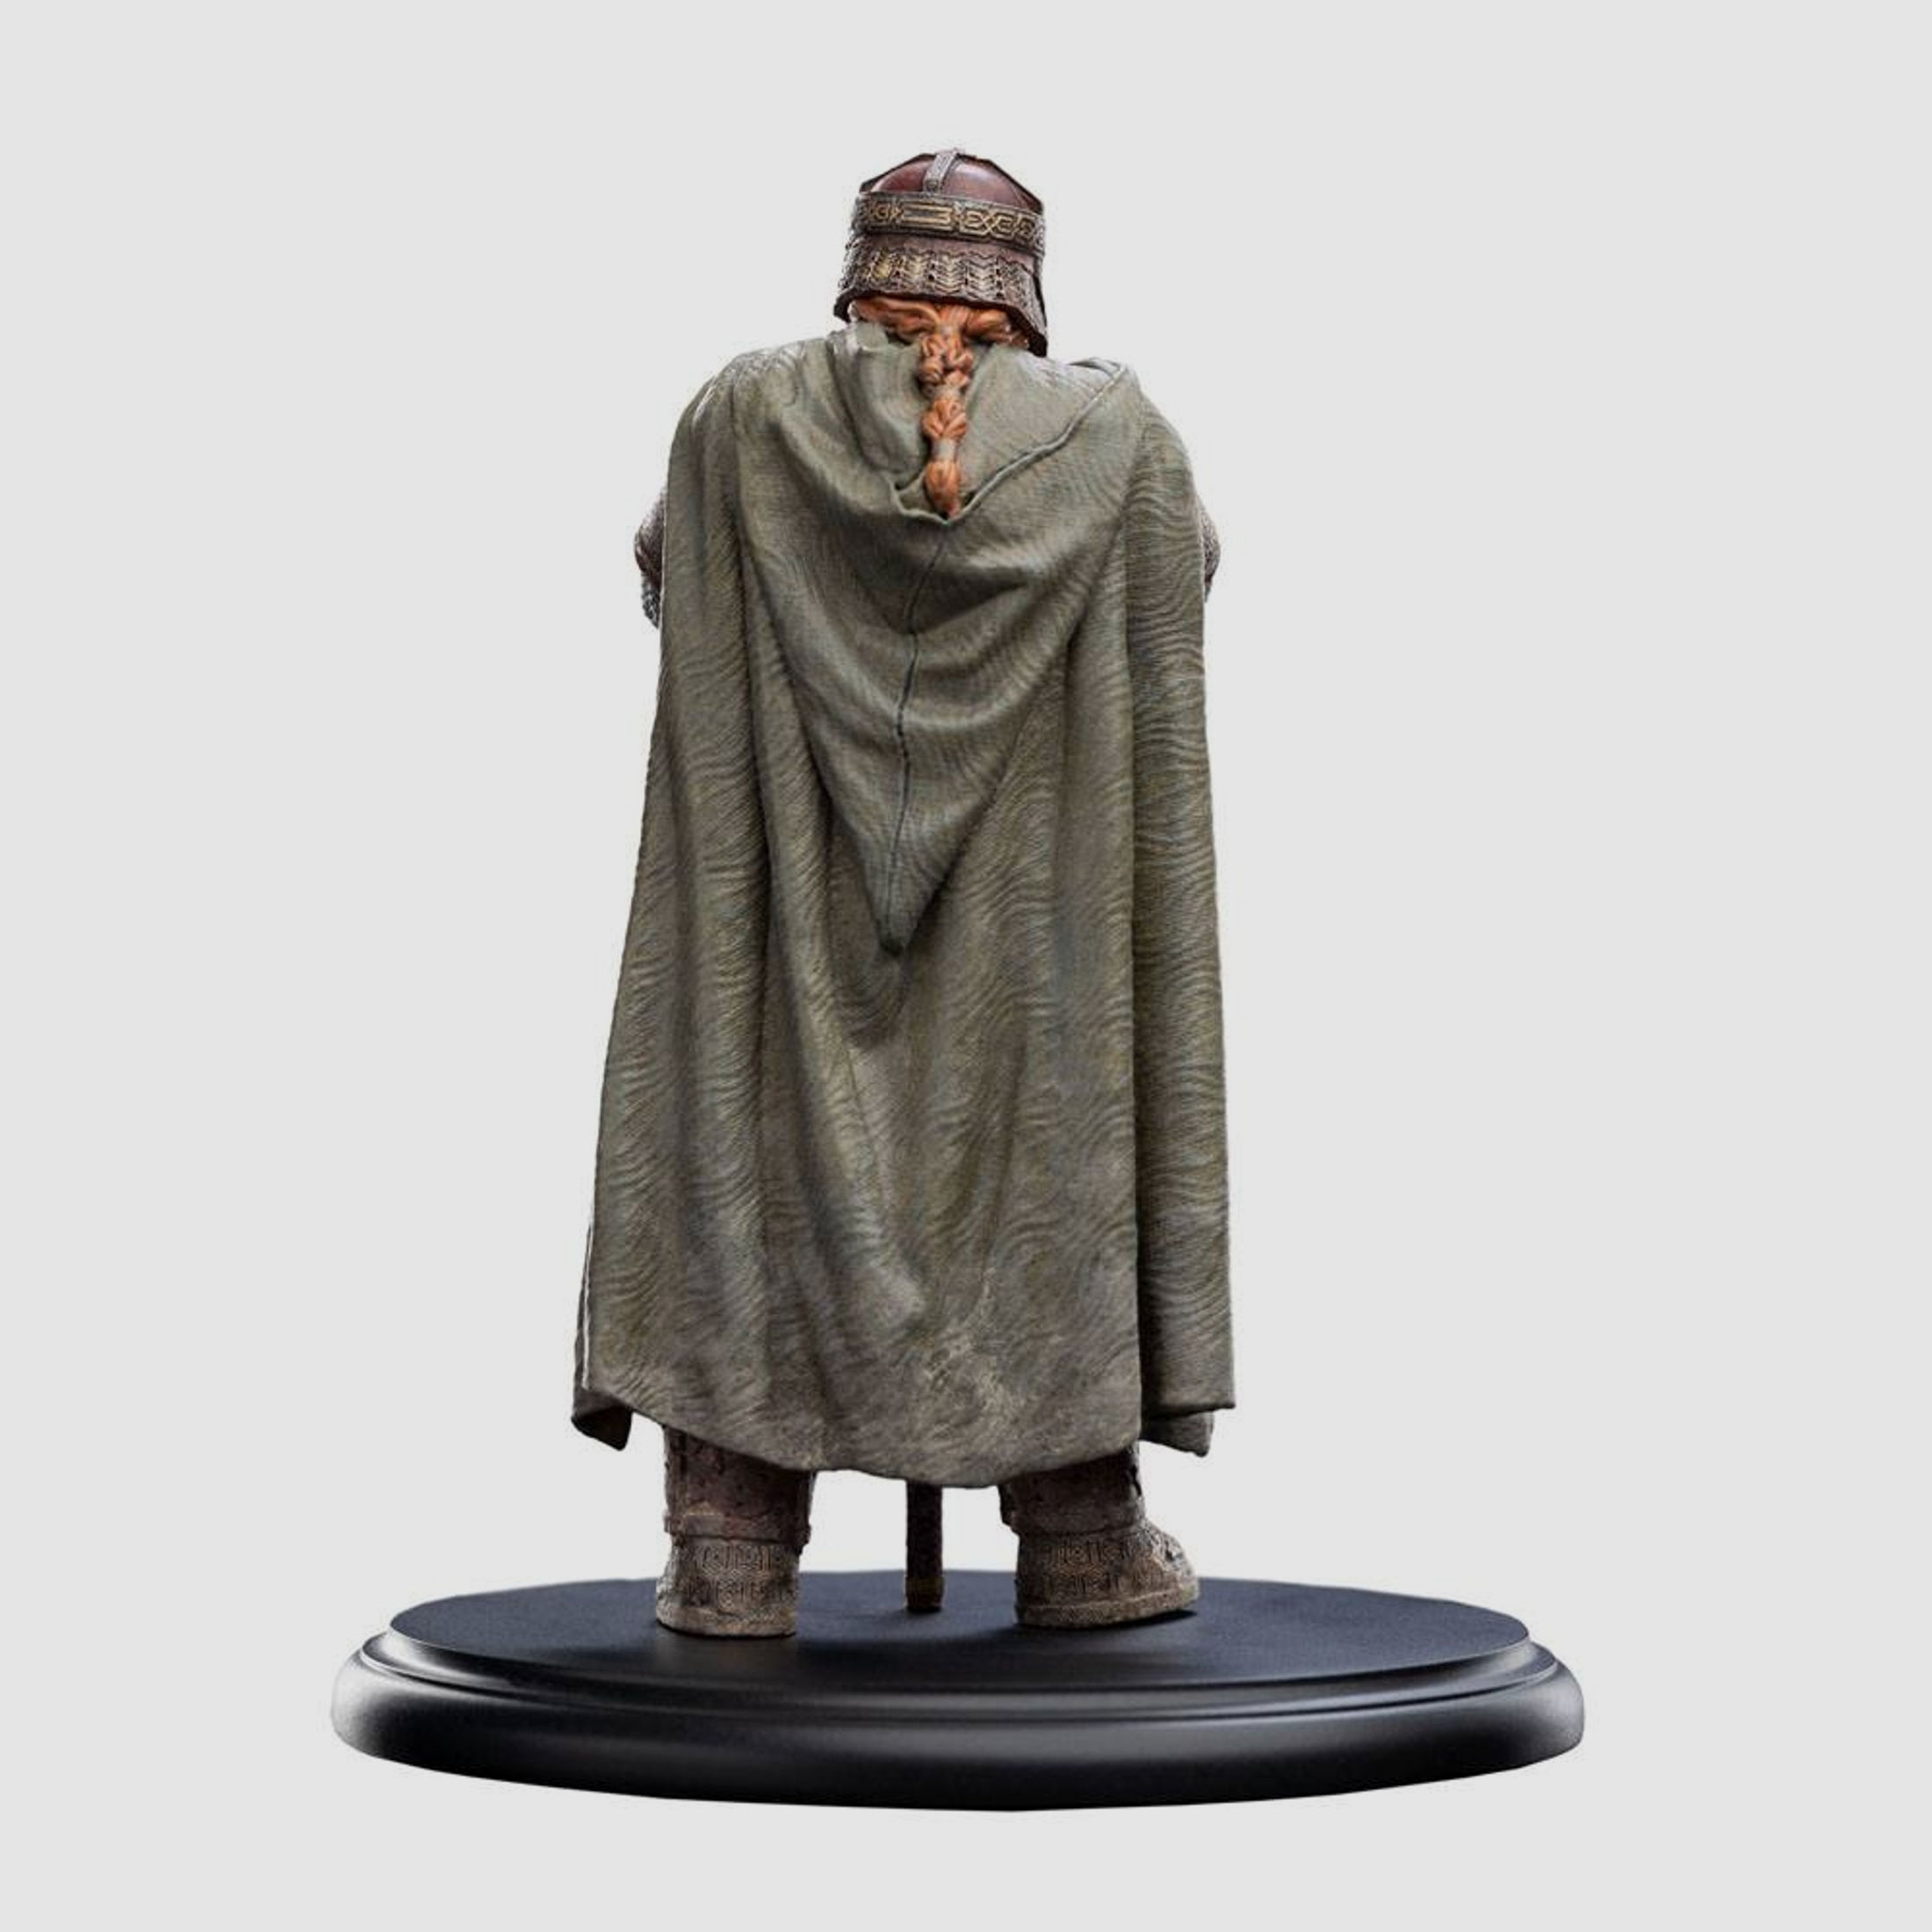 Herr der Ringe Mini Statue Gimli 19 cm | 42773